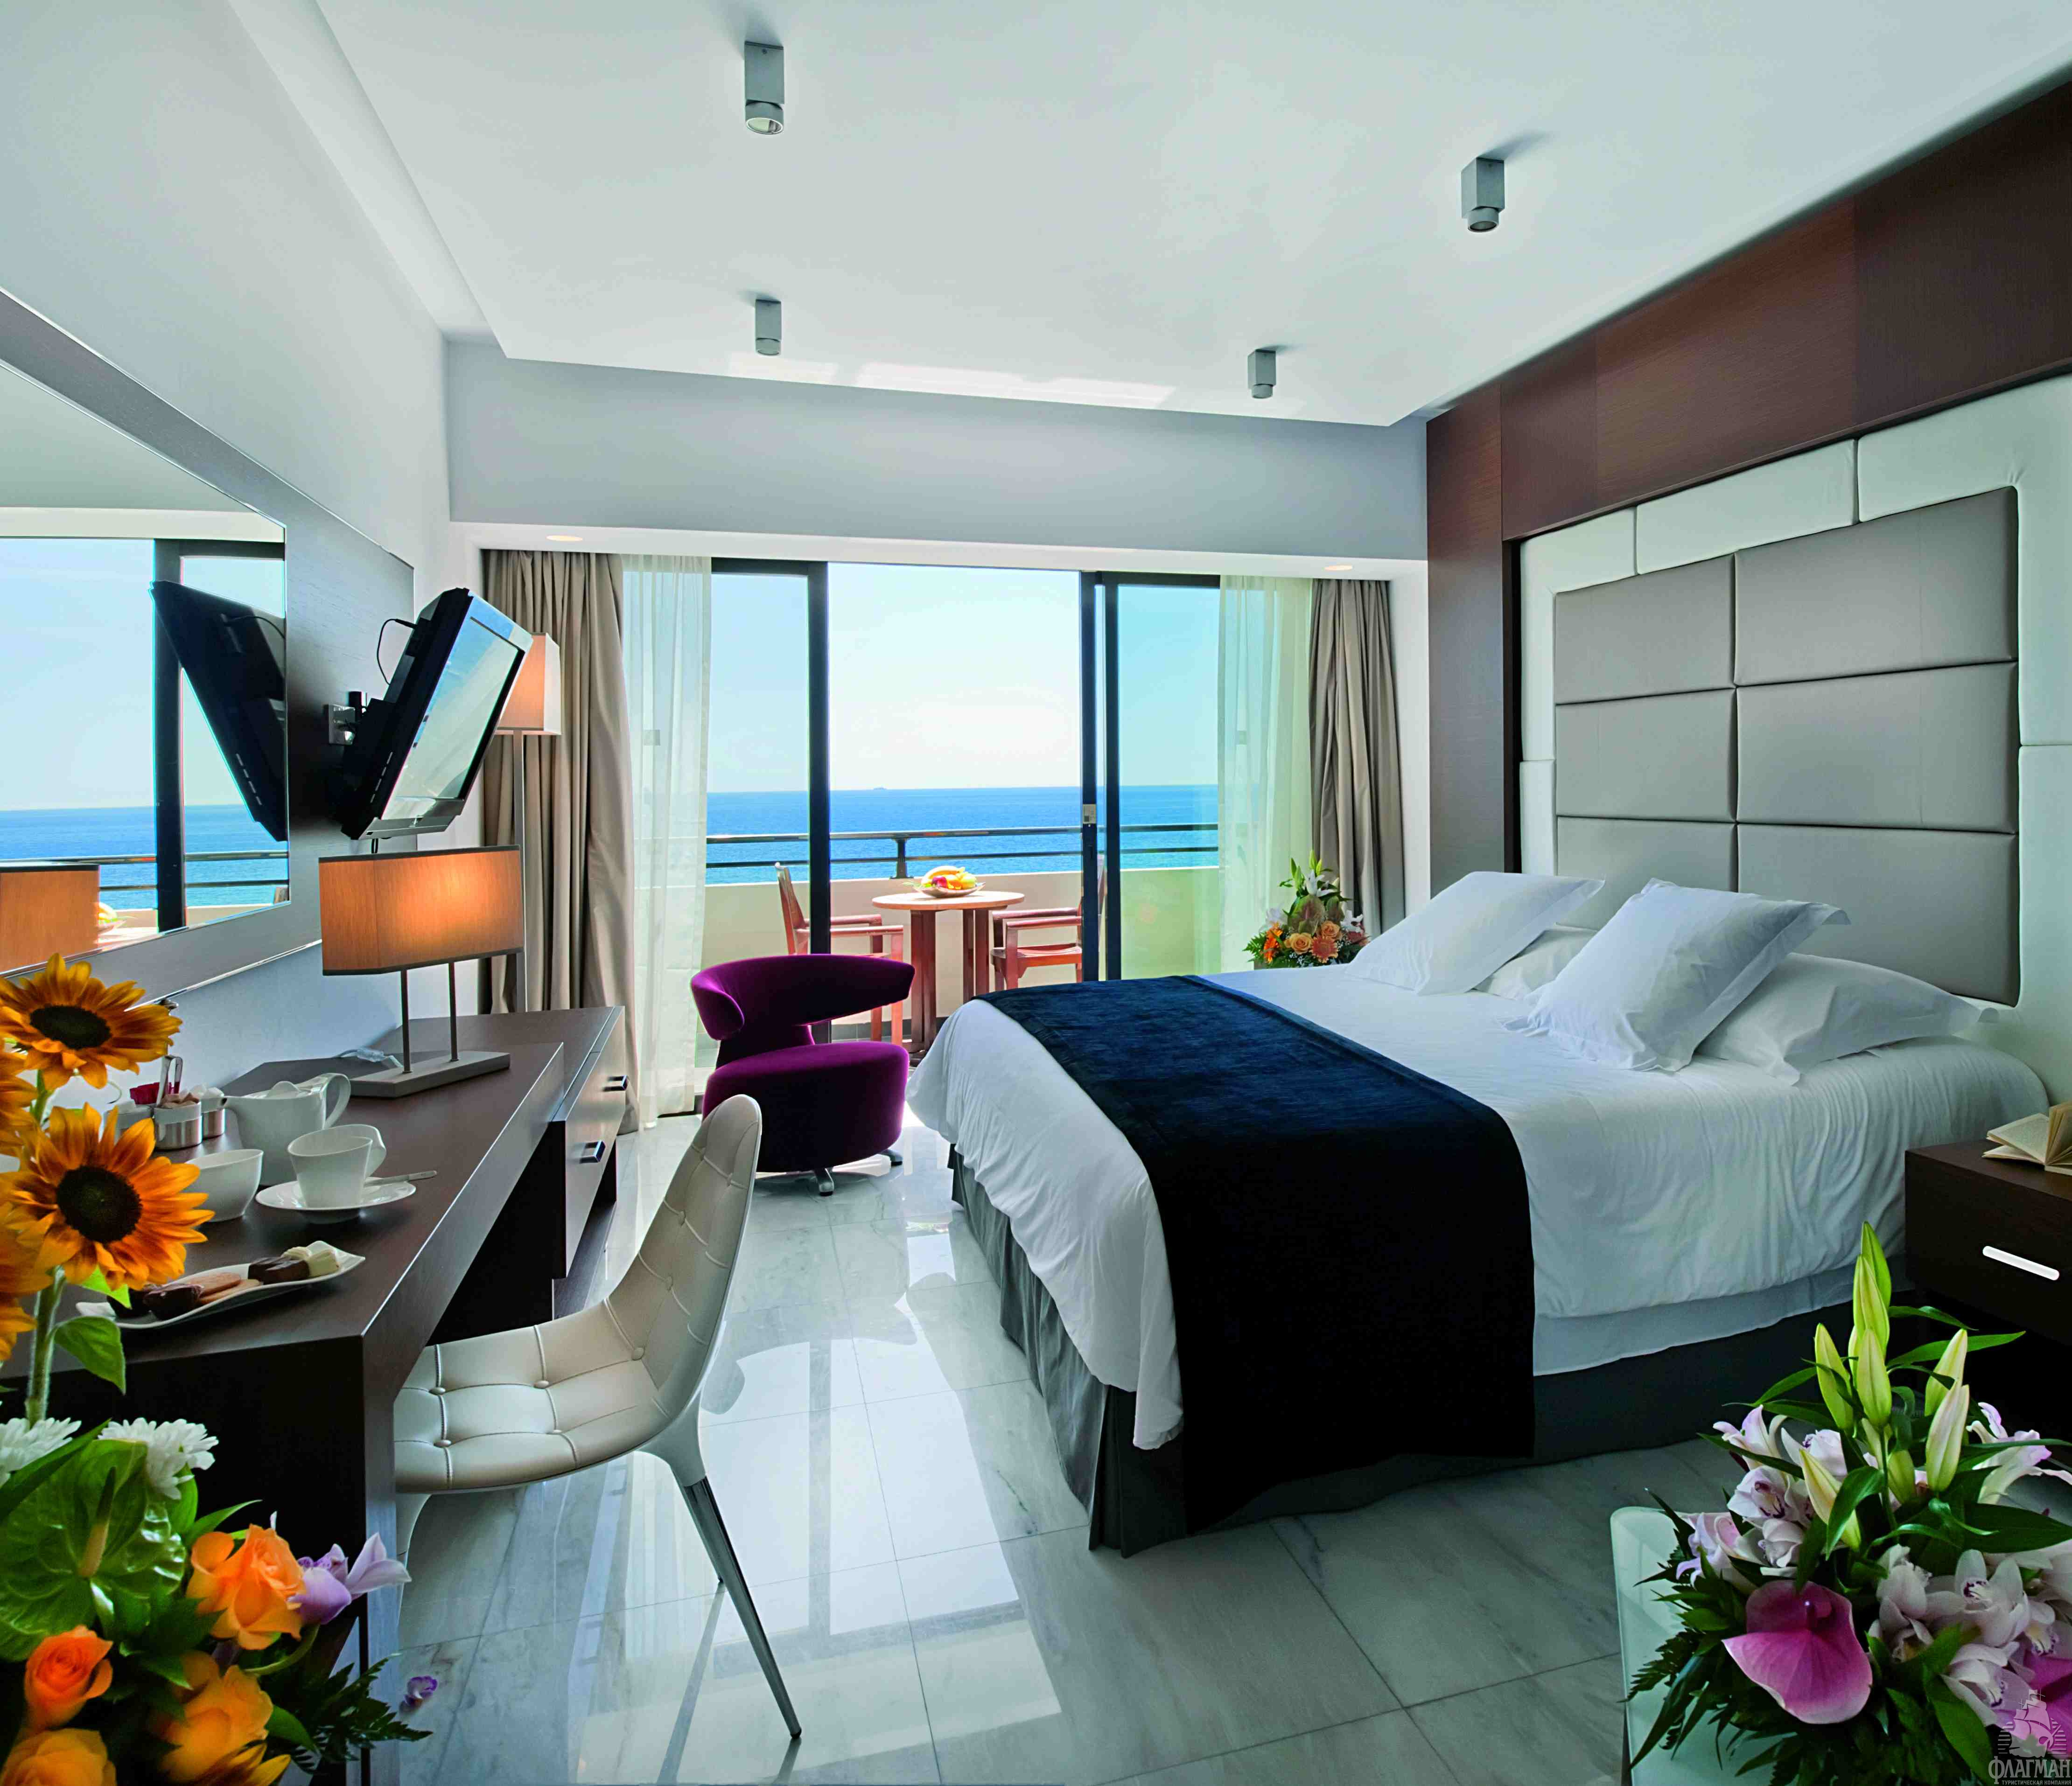 Хороший отель видео. Amathus Beach Hotel Limassol. Amathus Кипр. Amathus Beach Hotel Limassol Room. Гостиница 5 звезд Кипр.